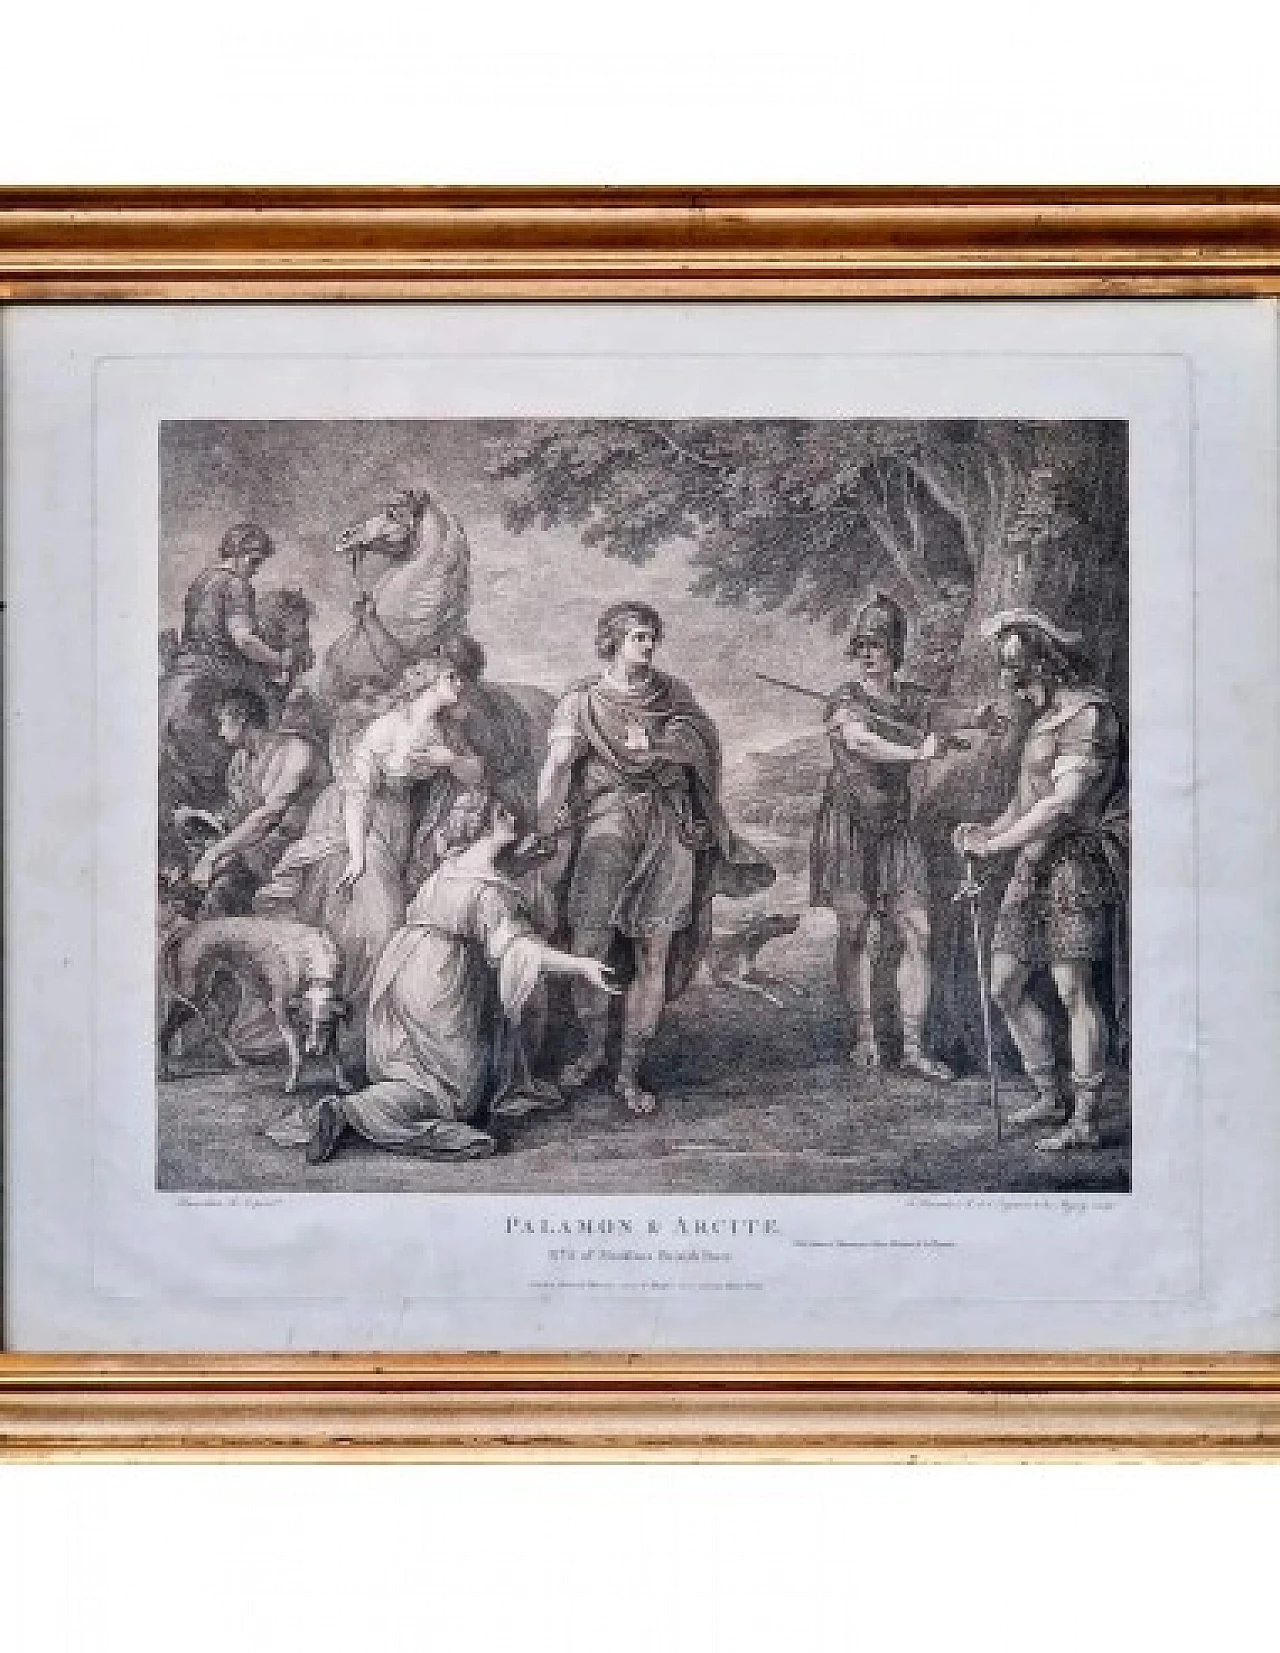 Palamone and Arcite, engraving by Francesco Bartolozzi, '700 2